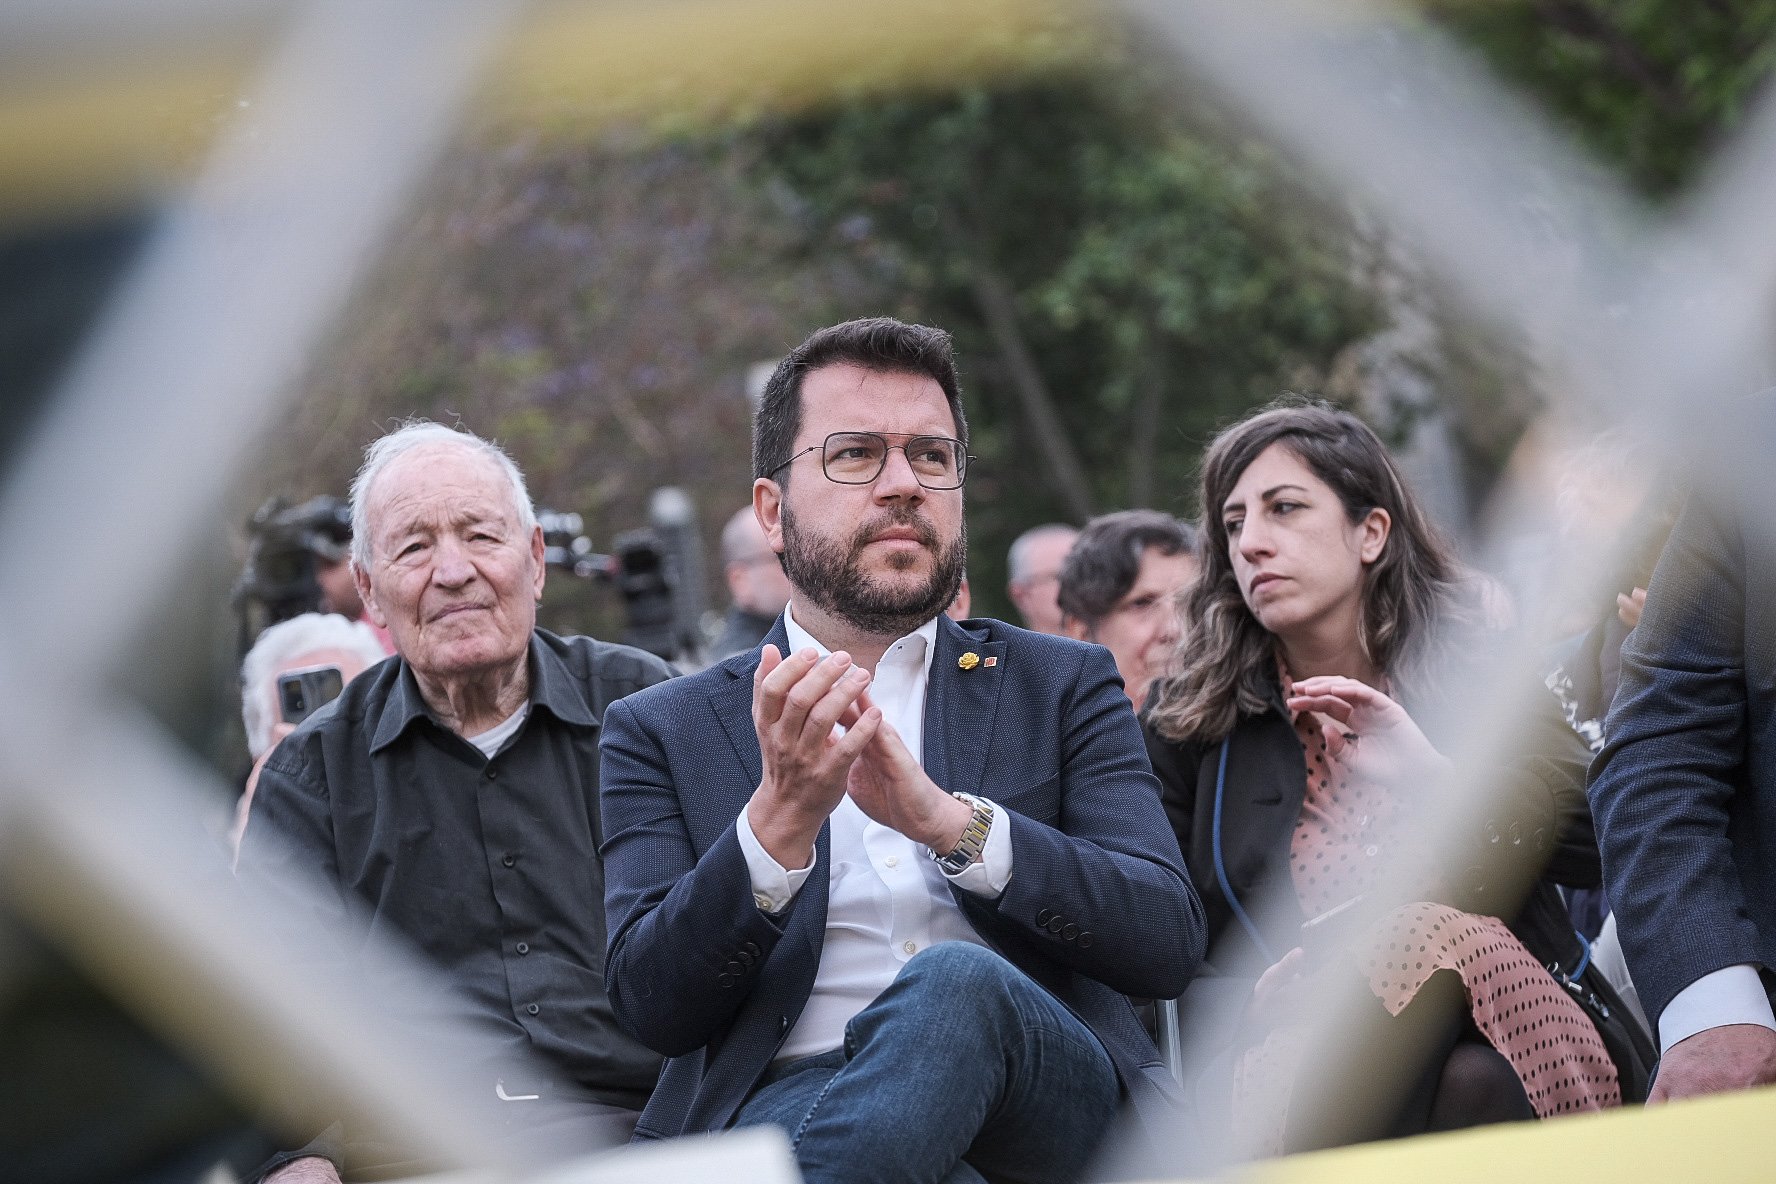 La Junta Electoral pica la cresta a Aragonès y Cambray por uso propagandístico del Govern en campaña